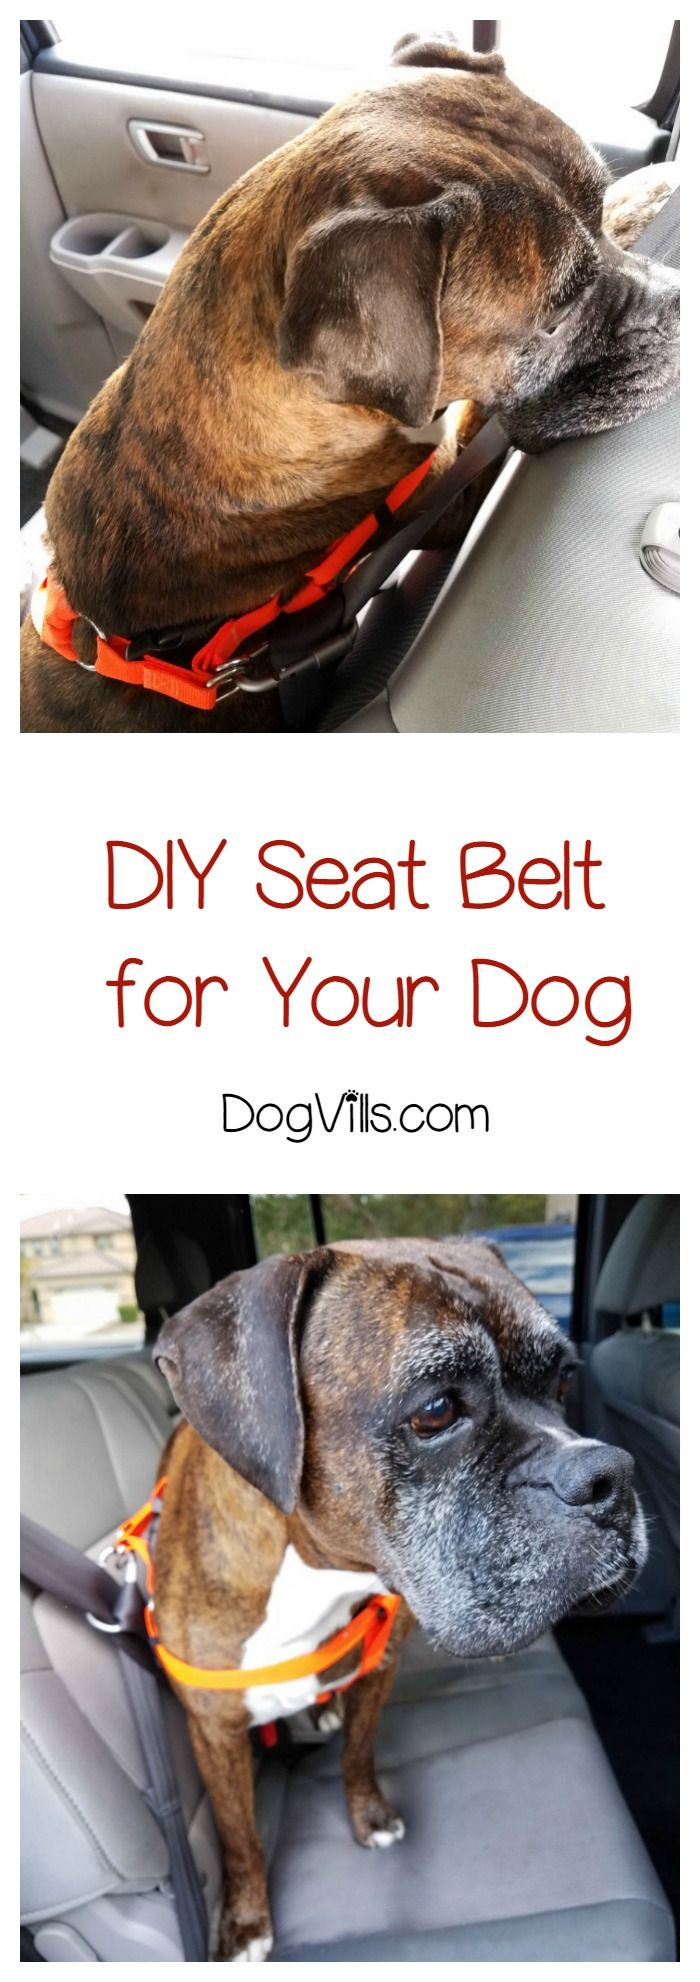 DIY Dog Seat Belt
 DIY Dog Seat Belt for Keeping Fido Safe in the Car